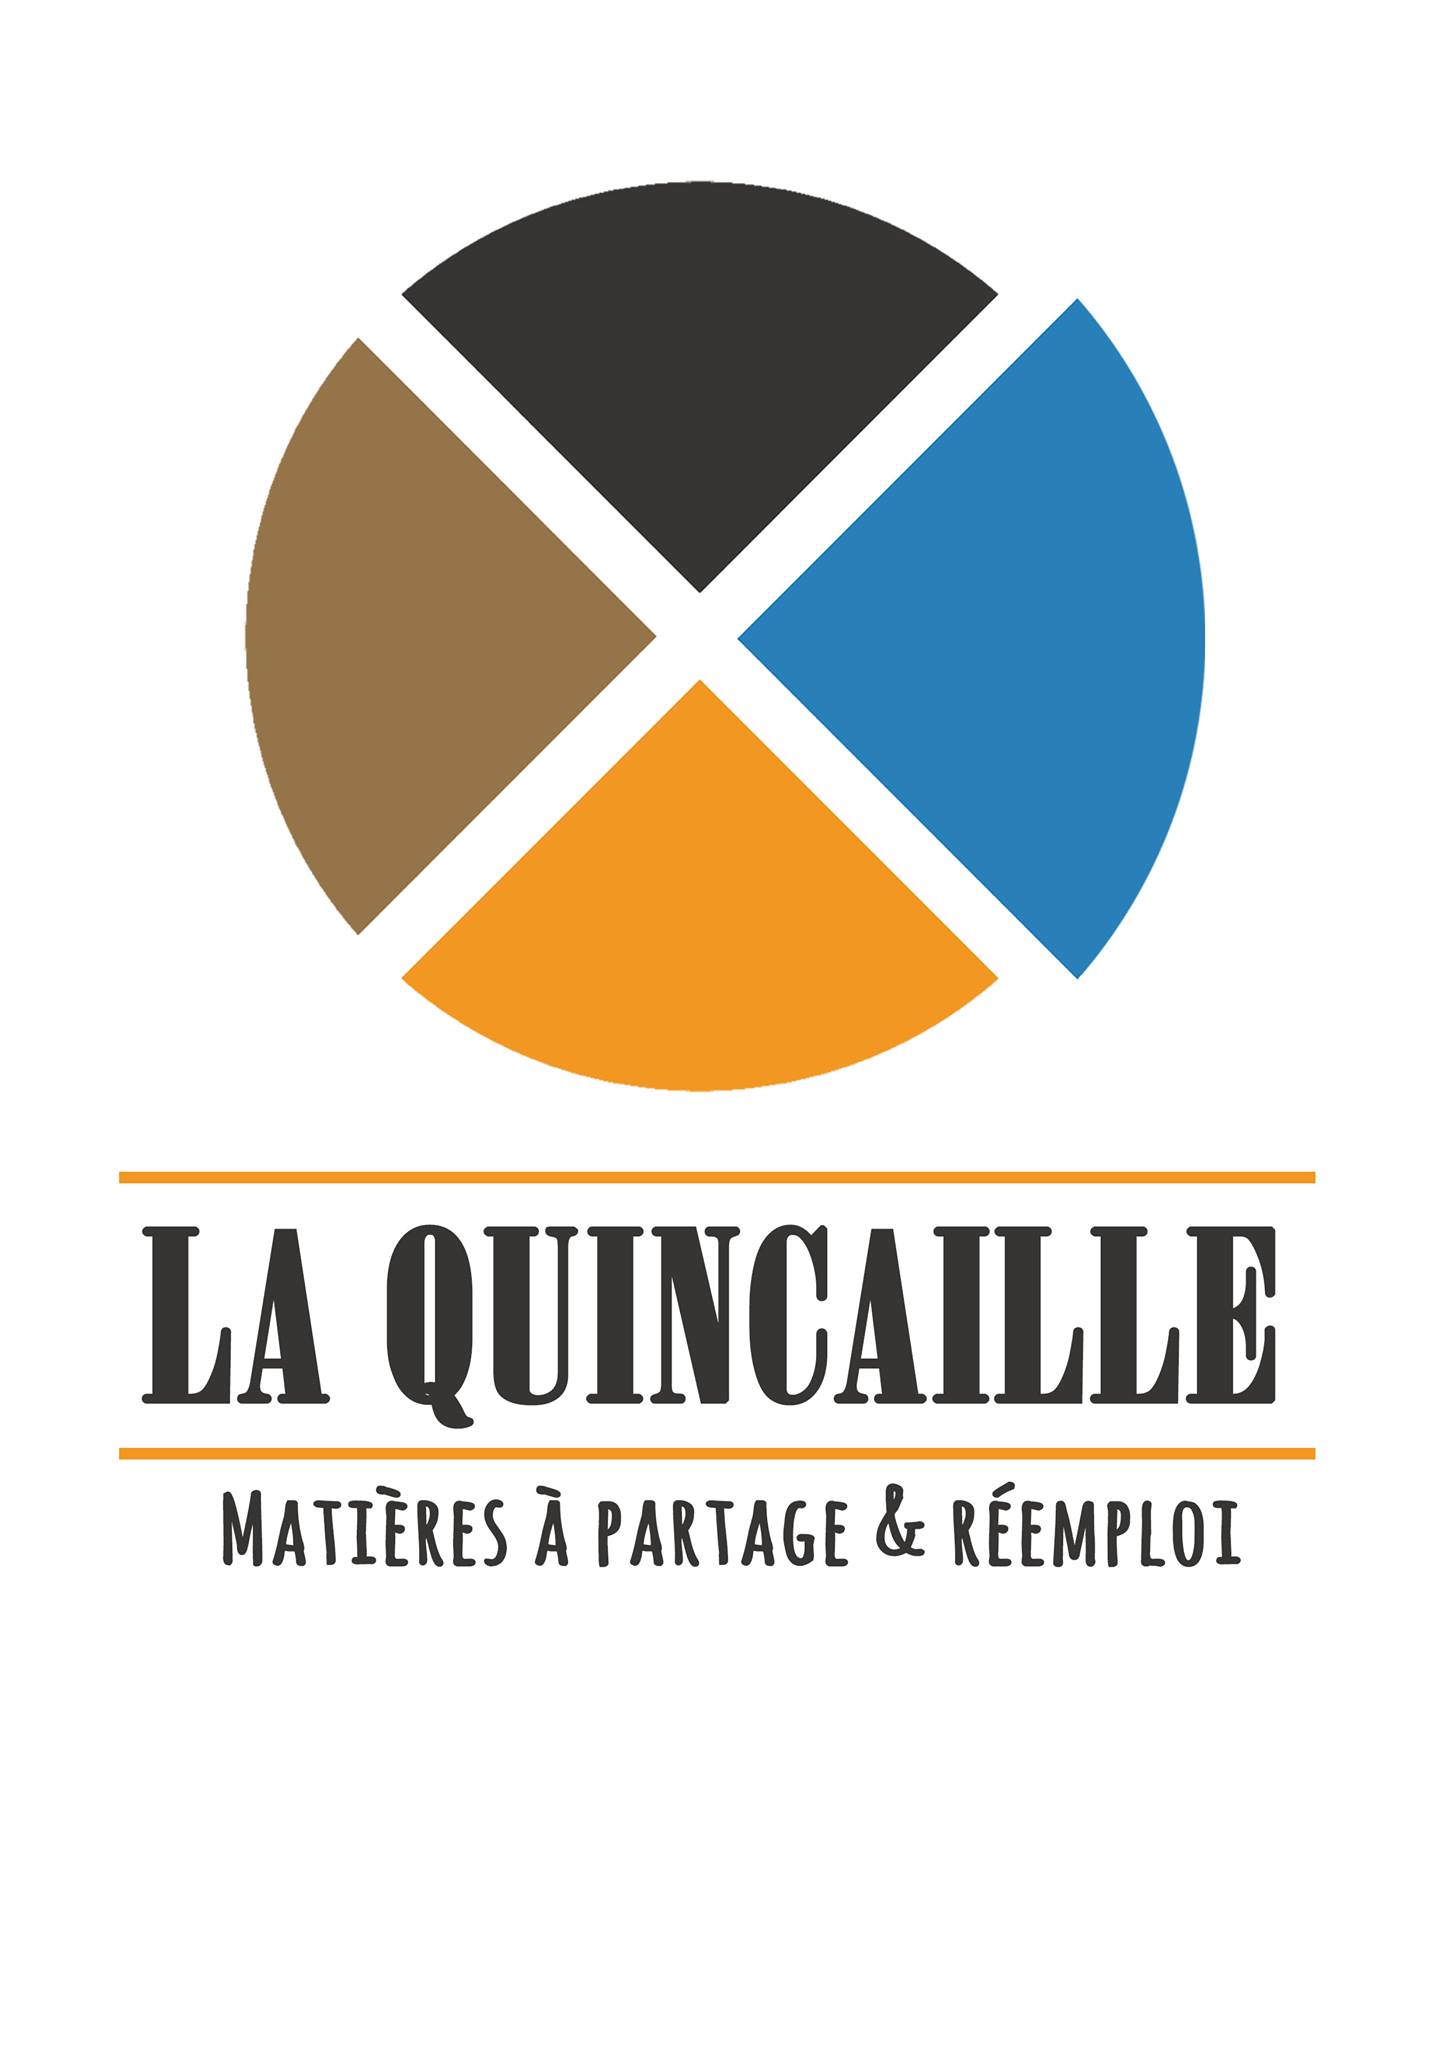 La Quincaille